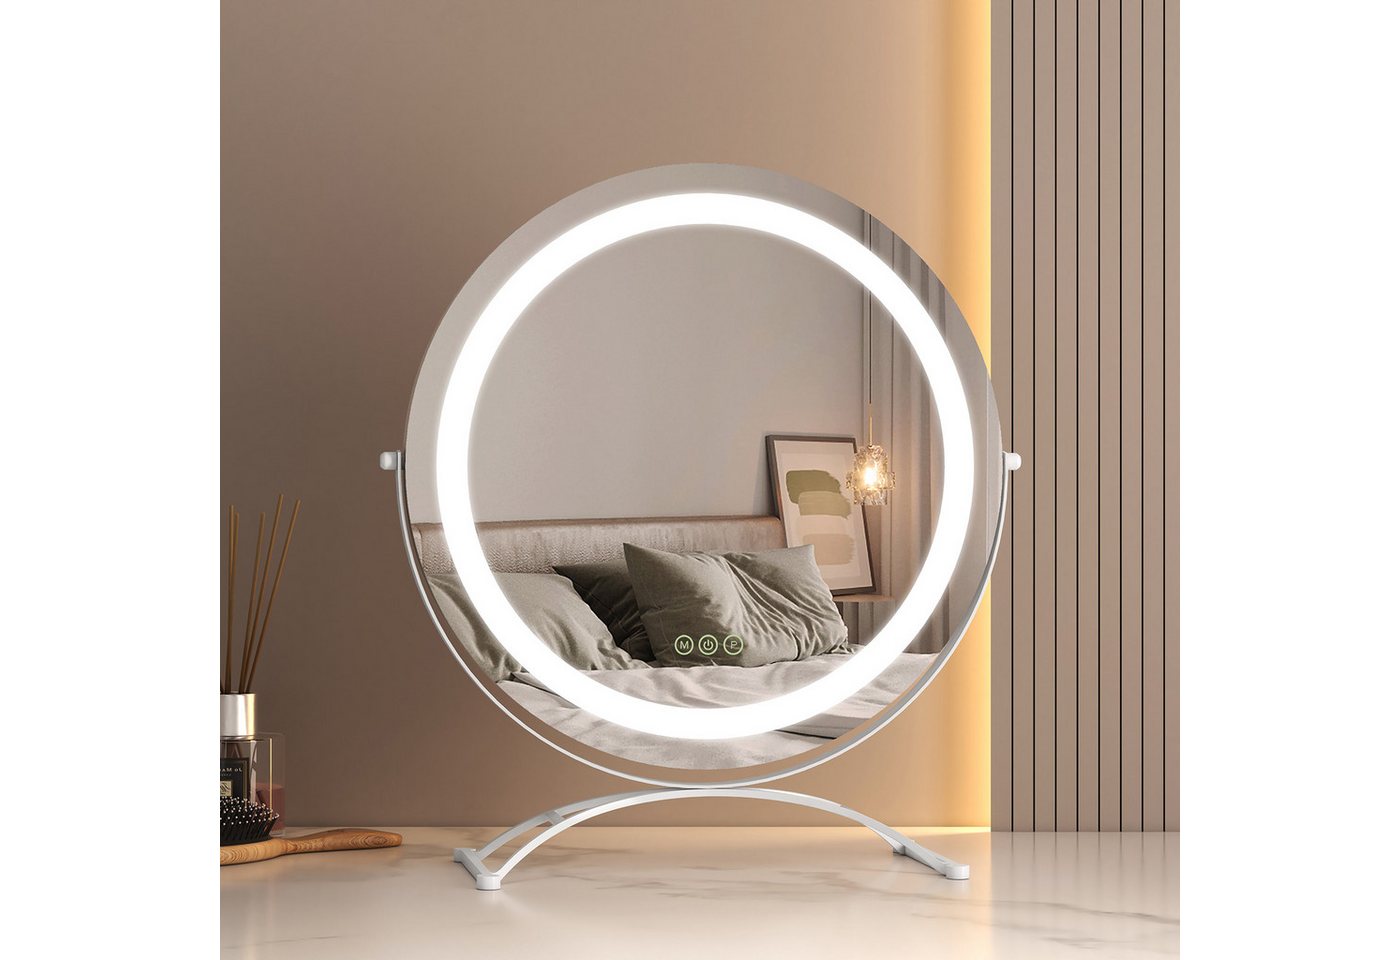 EMKE Kosmetikspiegel 360° Drehbar Schminkspiegel Runder Tischspiegel mit LED Beleuchtung, mit Touch, 3 Lichtfarben Dimmbar, Memory-Funktion, 360° Drehbar von EMKE